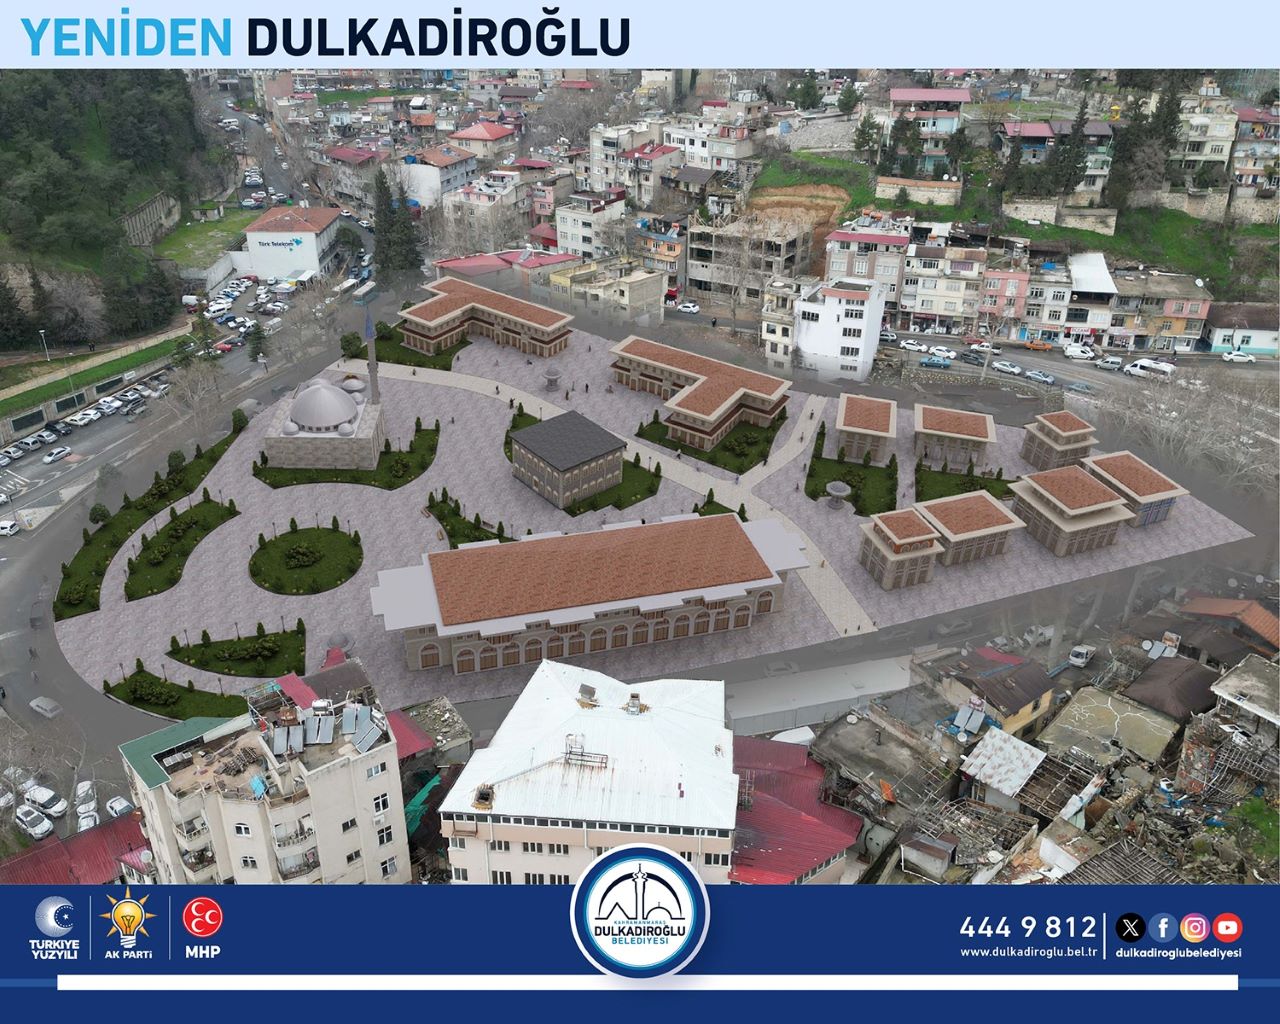 Dulkadiroğlu’na Tarihi Meydan Projesi